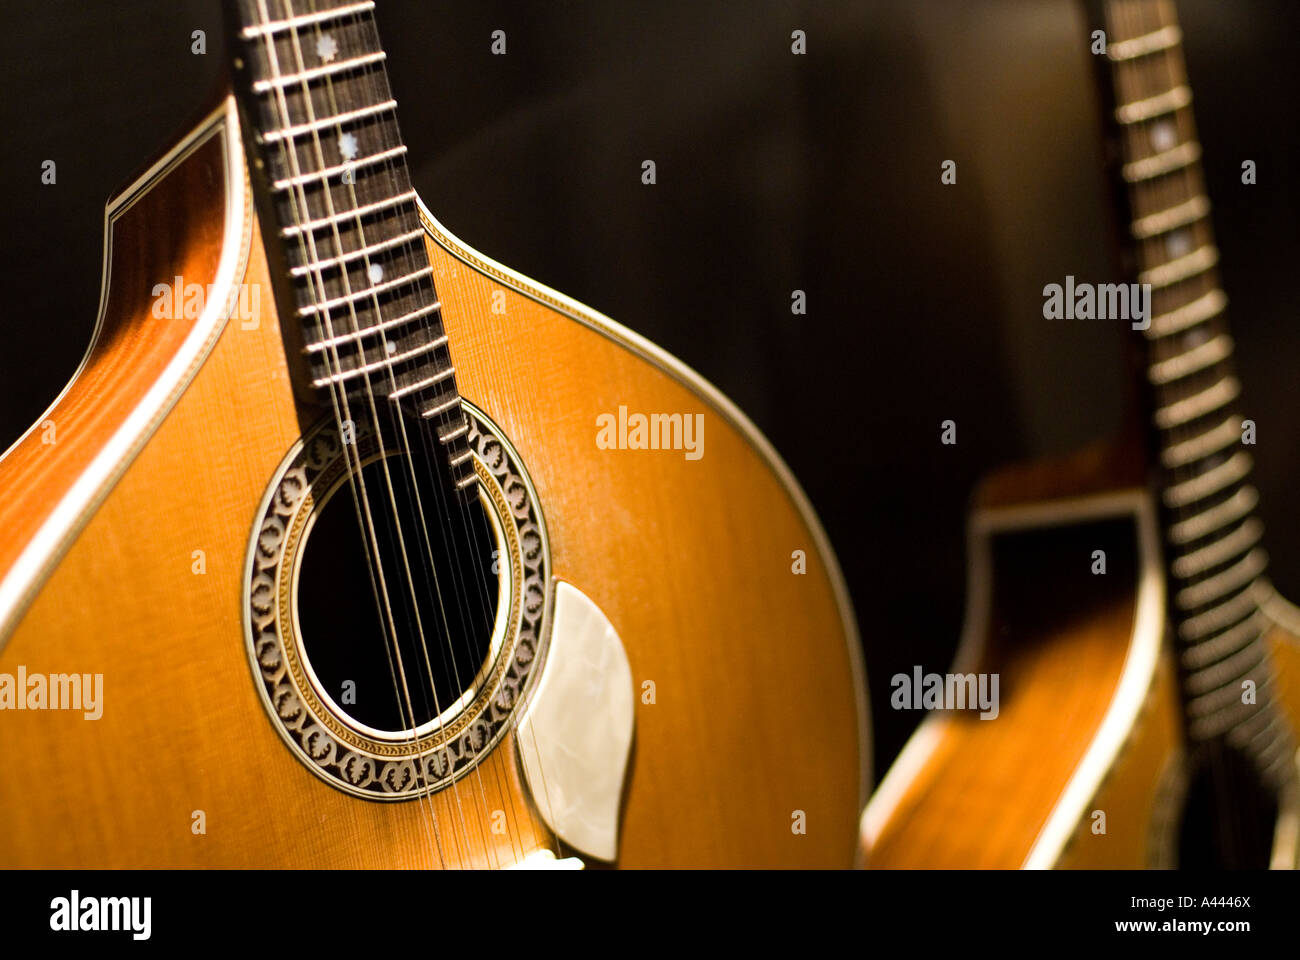 Résultat de recherche d'images pour "photo de guitarra portuguesa"